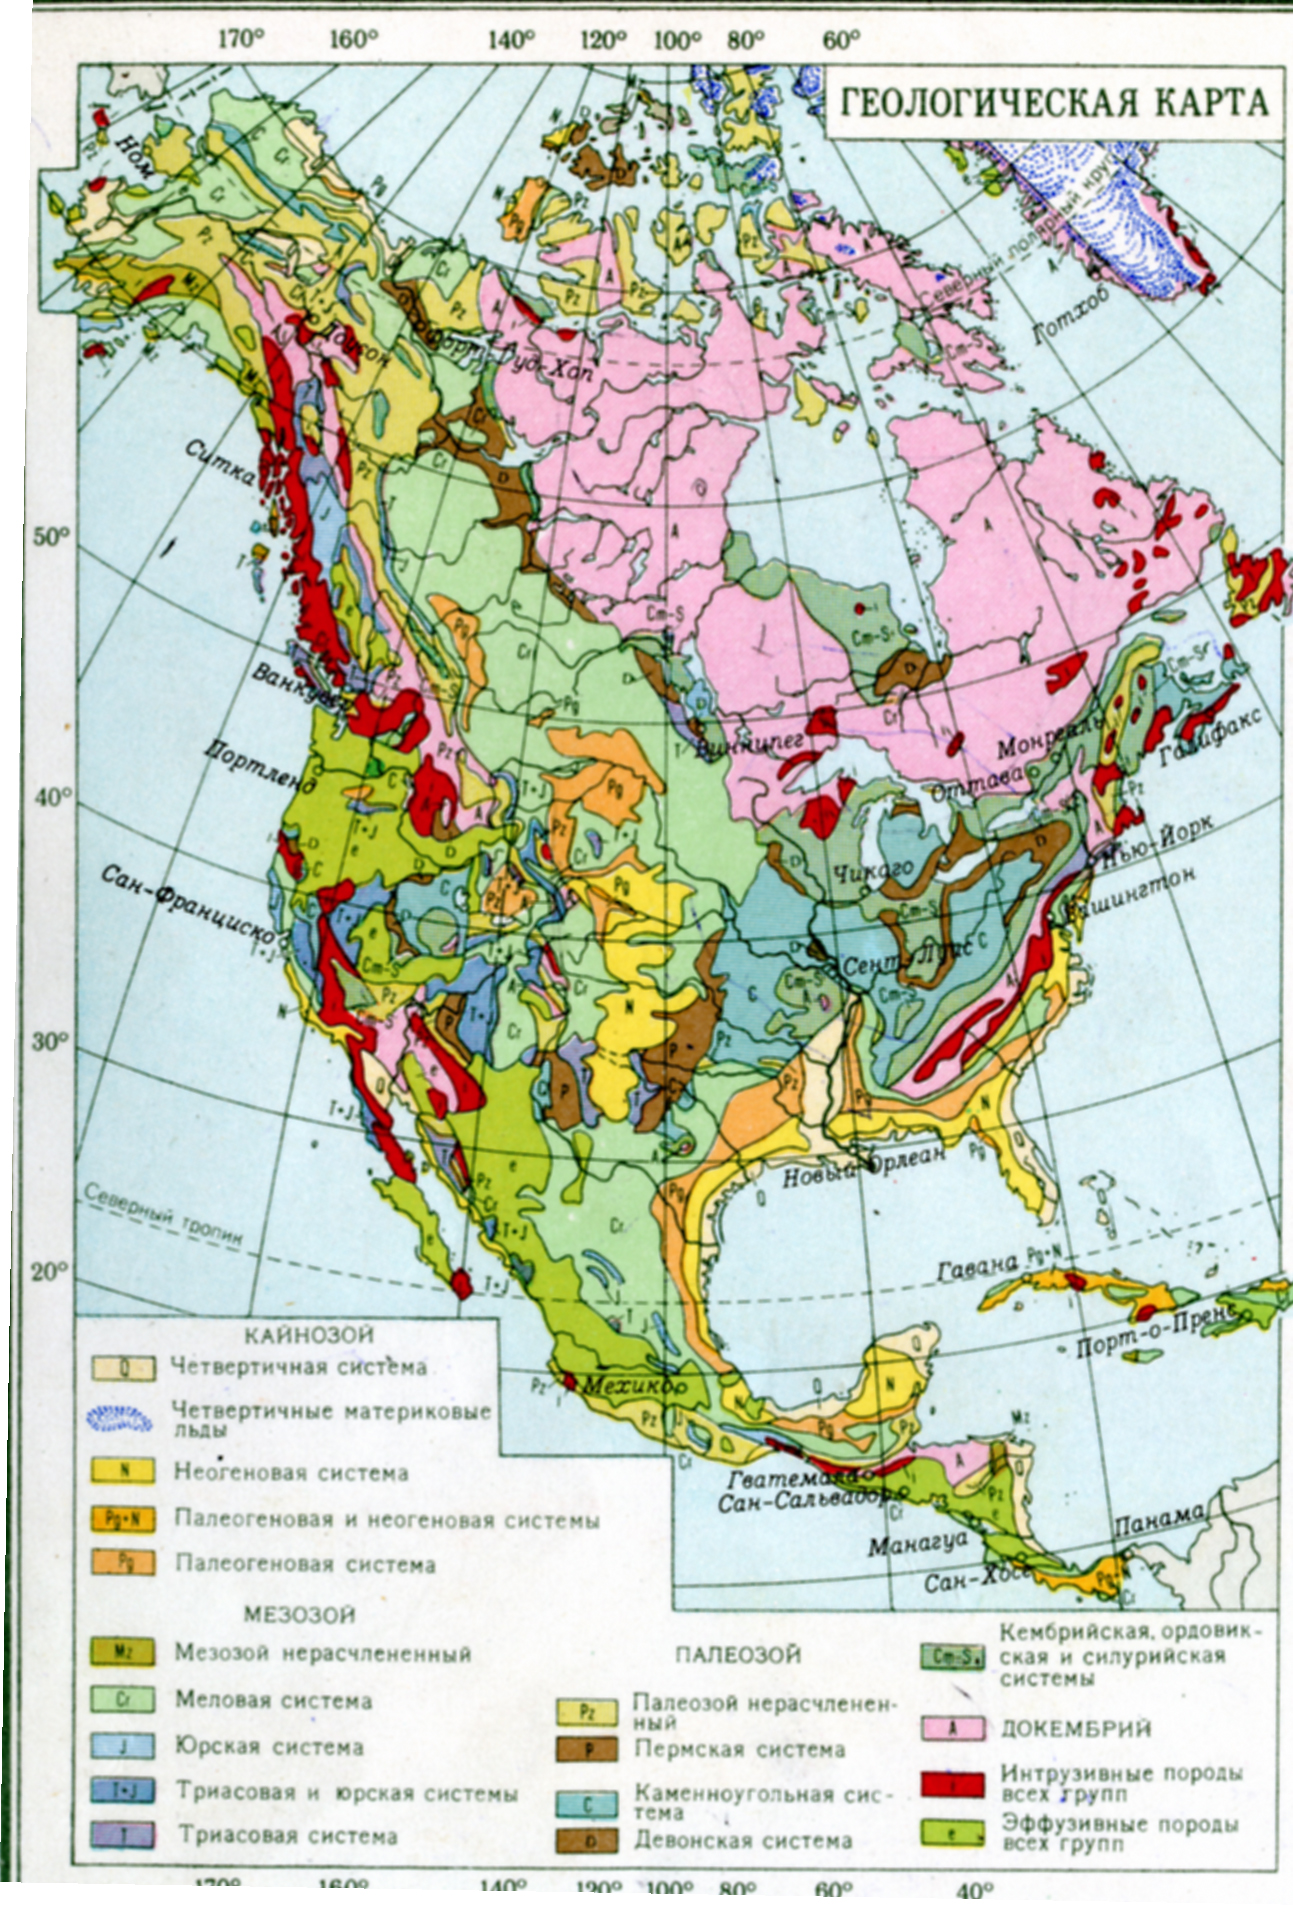 Тектонические структуры северной америки. Геологическая карта Северной Америки. Геология Северной Америки карта. Карта геологического строения Северной Америки. Тектоническое строение Северной Америки карта.